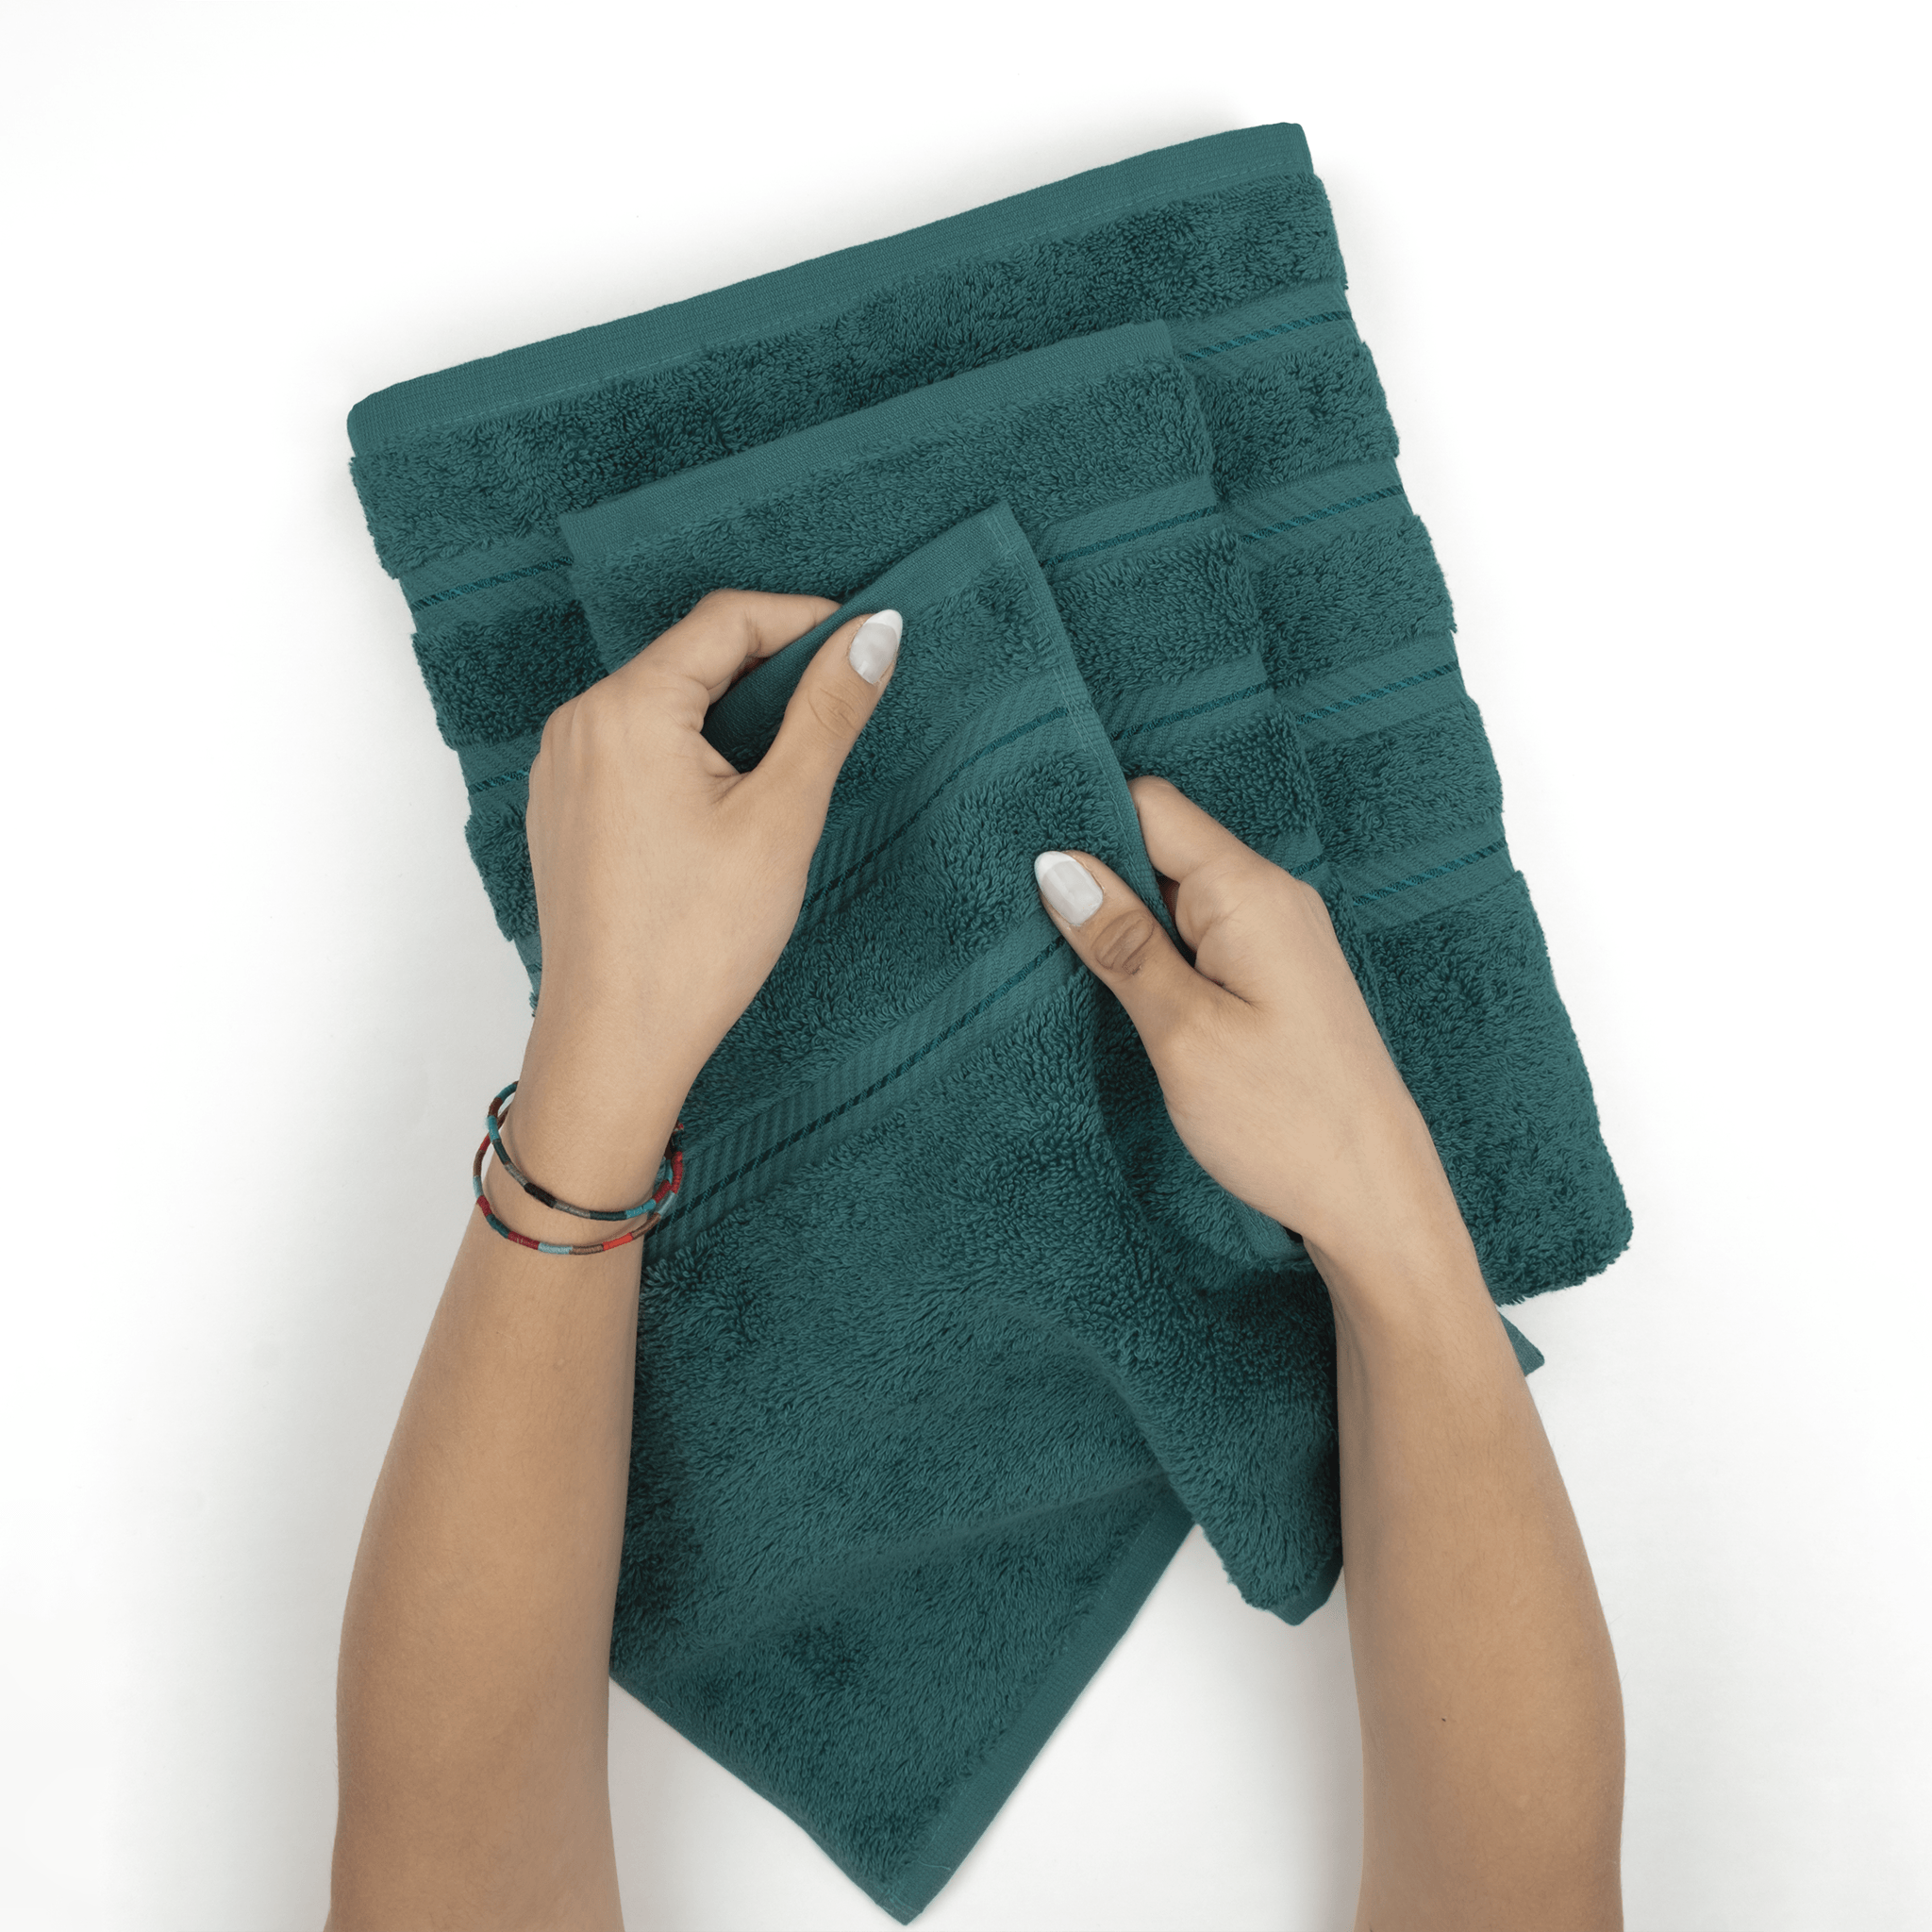 American Soft Linen - 3 Piece Turkish Cotton Towel Set - Colonial-Blue - 5